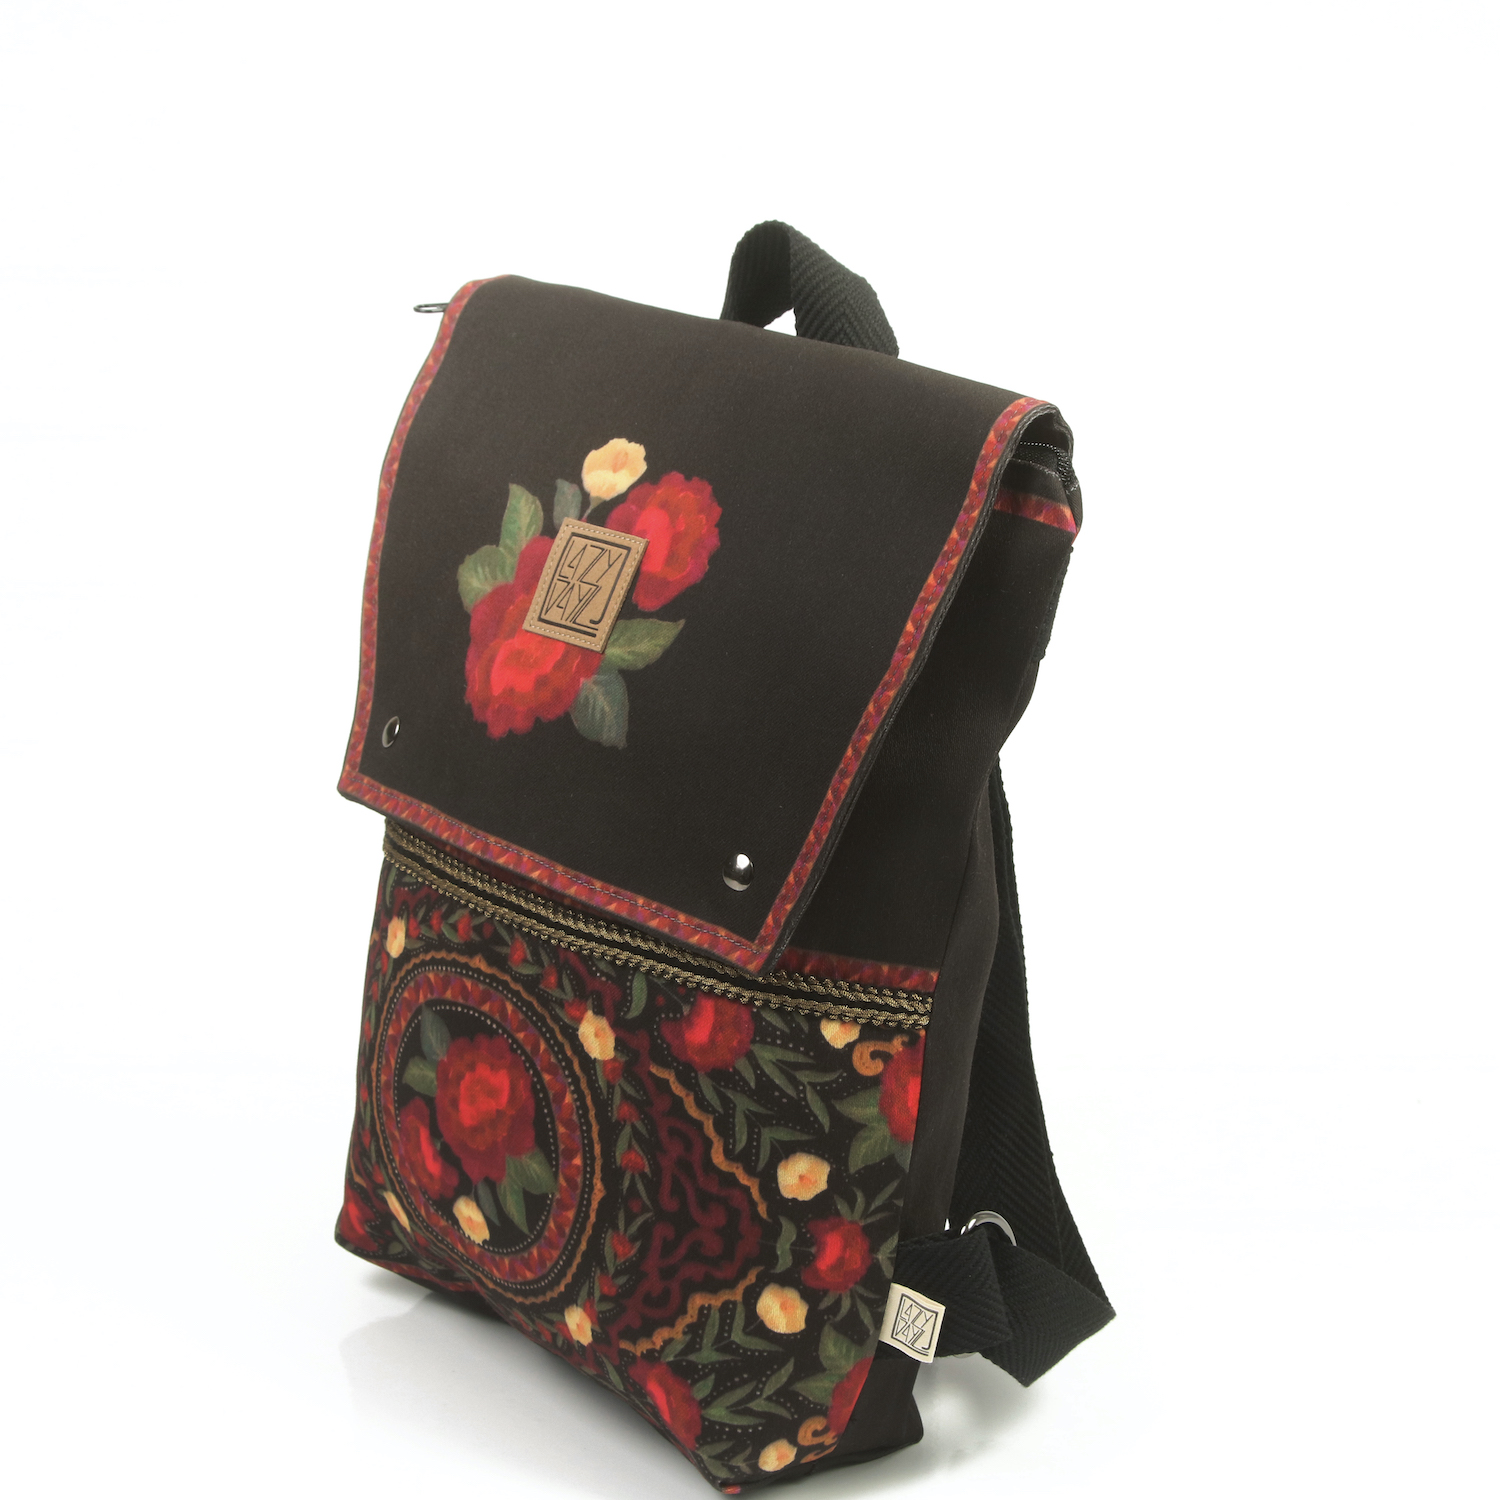 LazyDayz-Designs-Backpack-γυναικείος-σάκος-πλάτης-χειροποίητος bb0703b